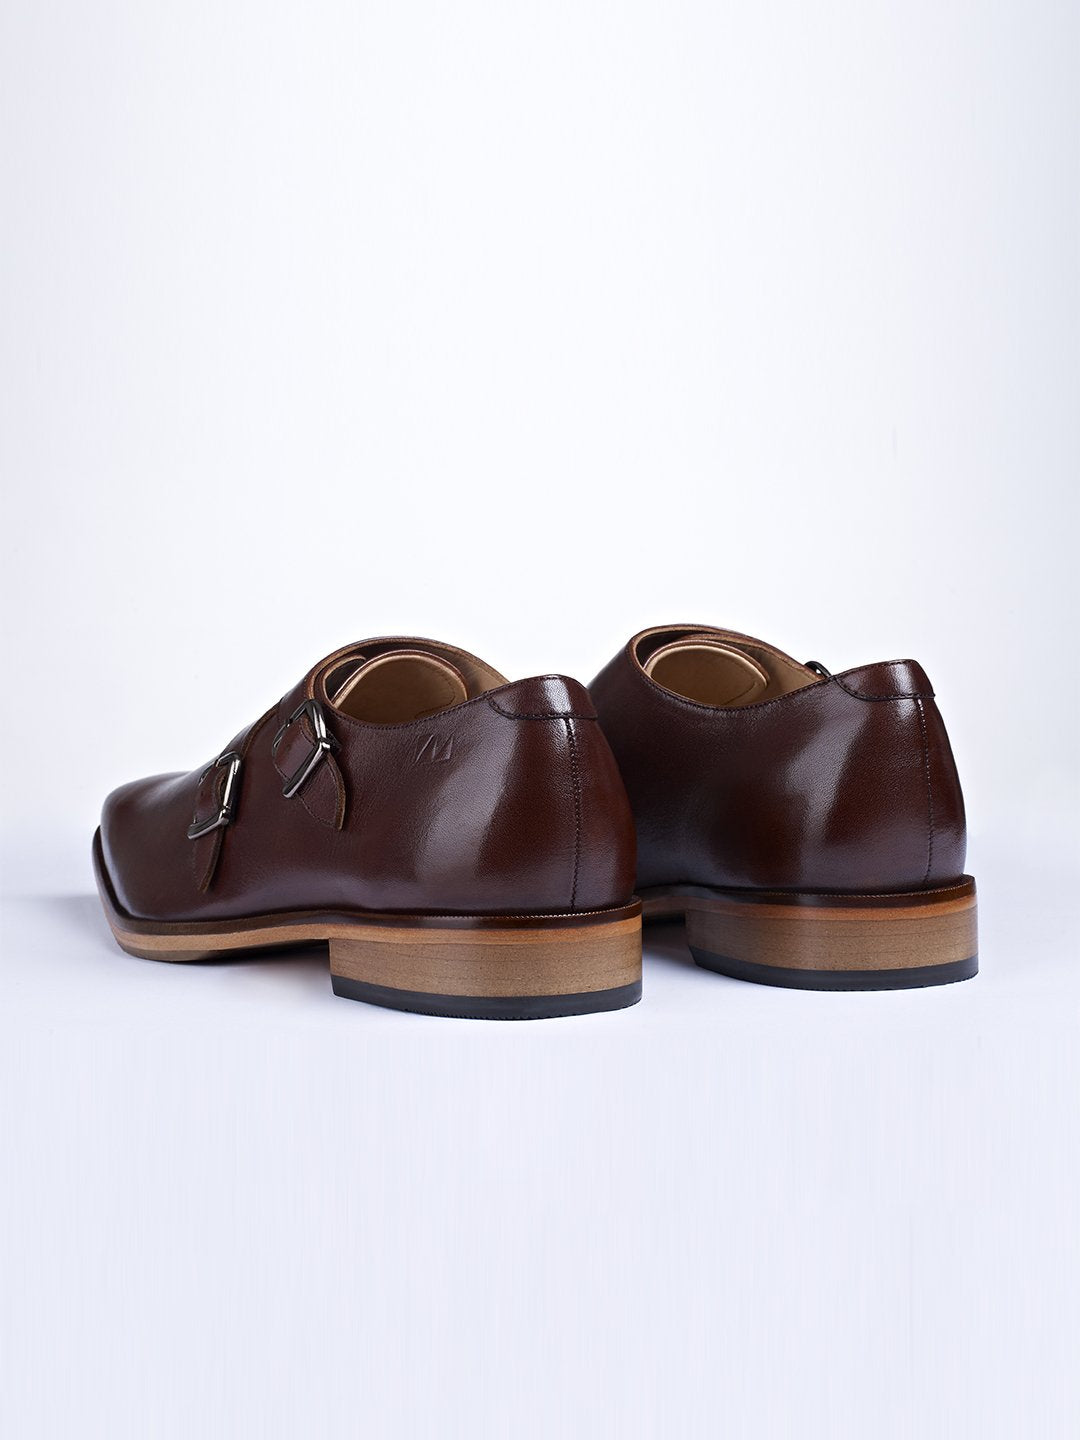 Classic Double Buckle Monk Shoes - Zest Mélange 